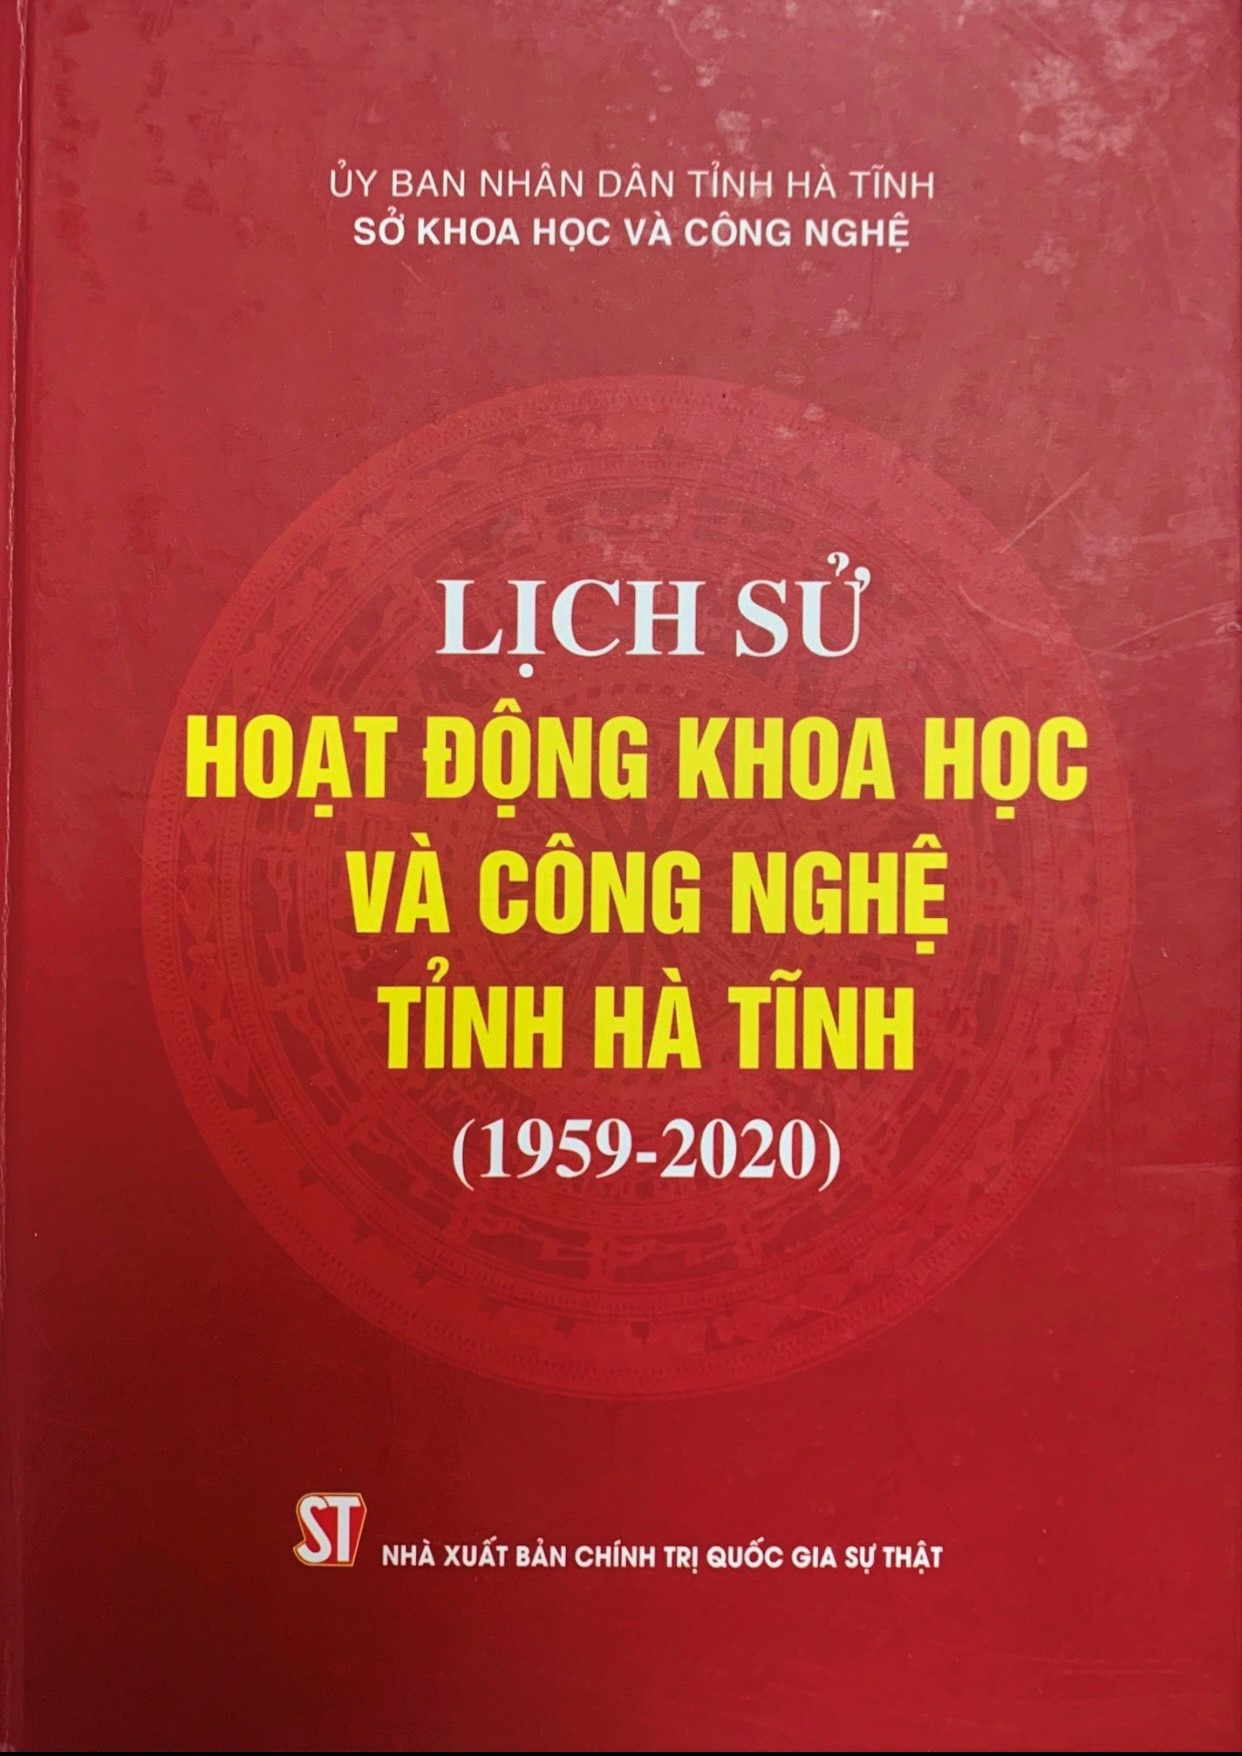 Lịch sử hoạt động khoa học và công nghệ tỉnh Hà Tĩnh (1959 - 2020)